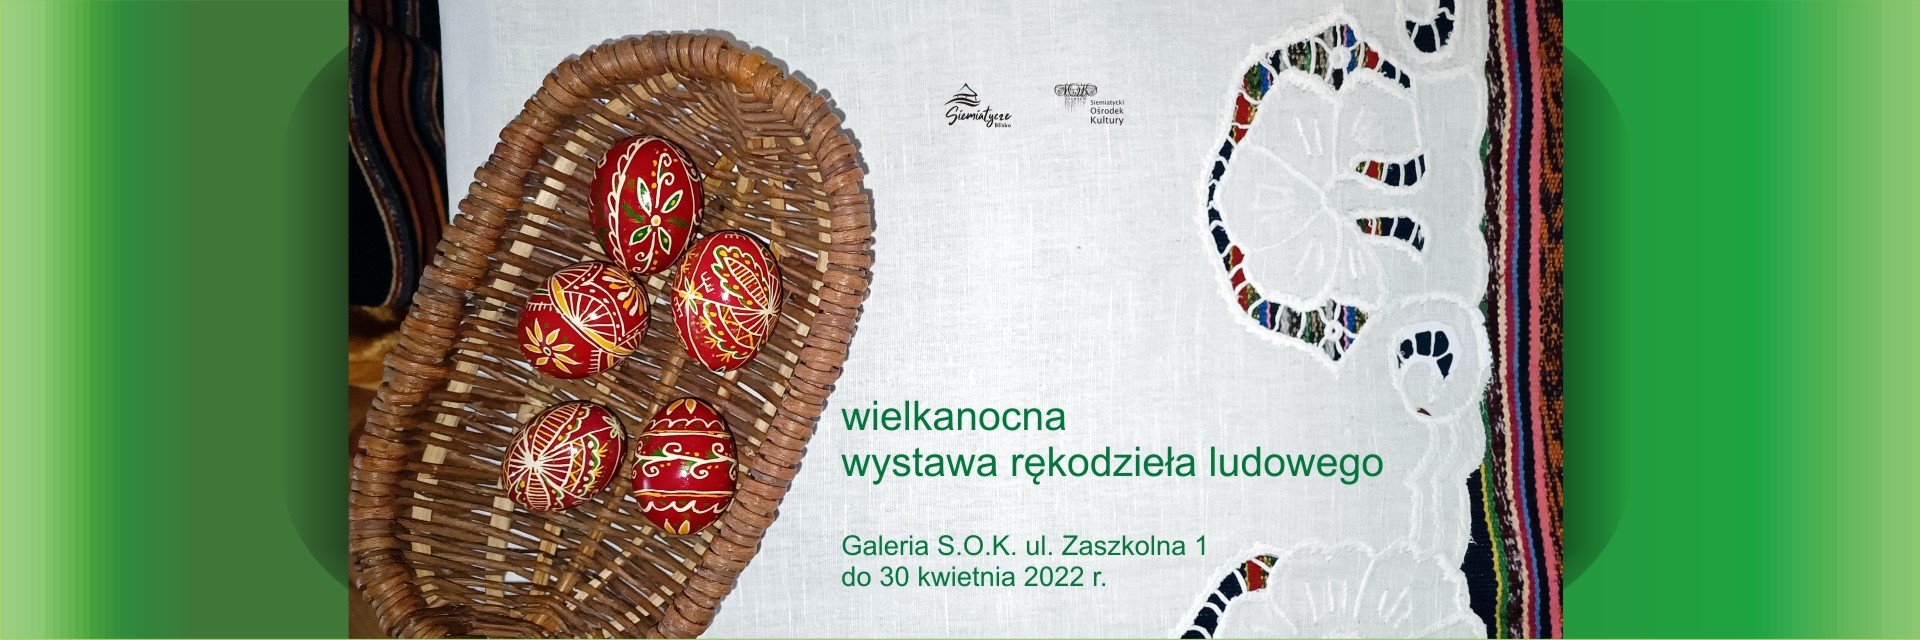 Grafika z zielonym tłem i pisankami z tekstem: wielkanocna wystawa rękodzieła ludowego Galeria S.O.K. ul. Zaszkolna 1 do 30 kwietnia 2022